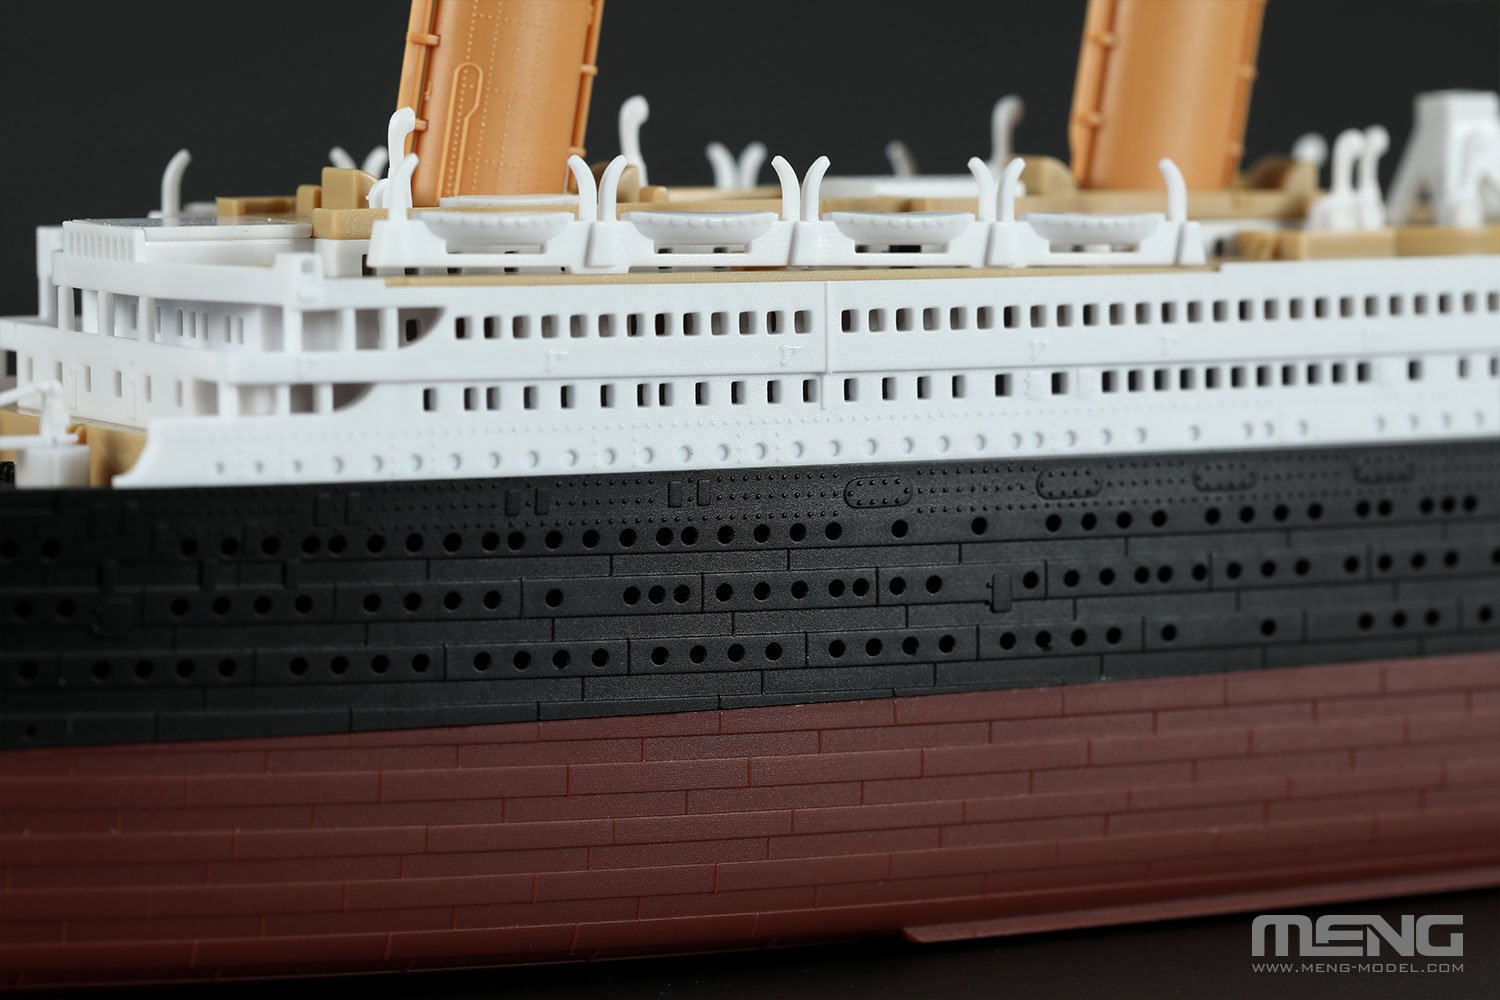 1/700 R.M.S. Titanic - Click Image to Close